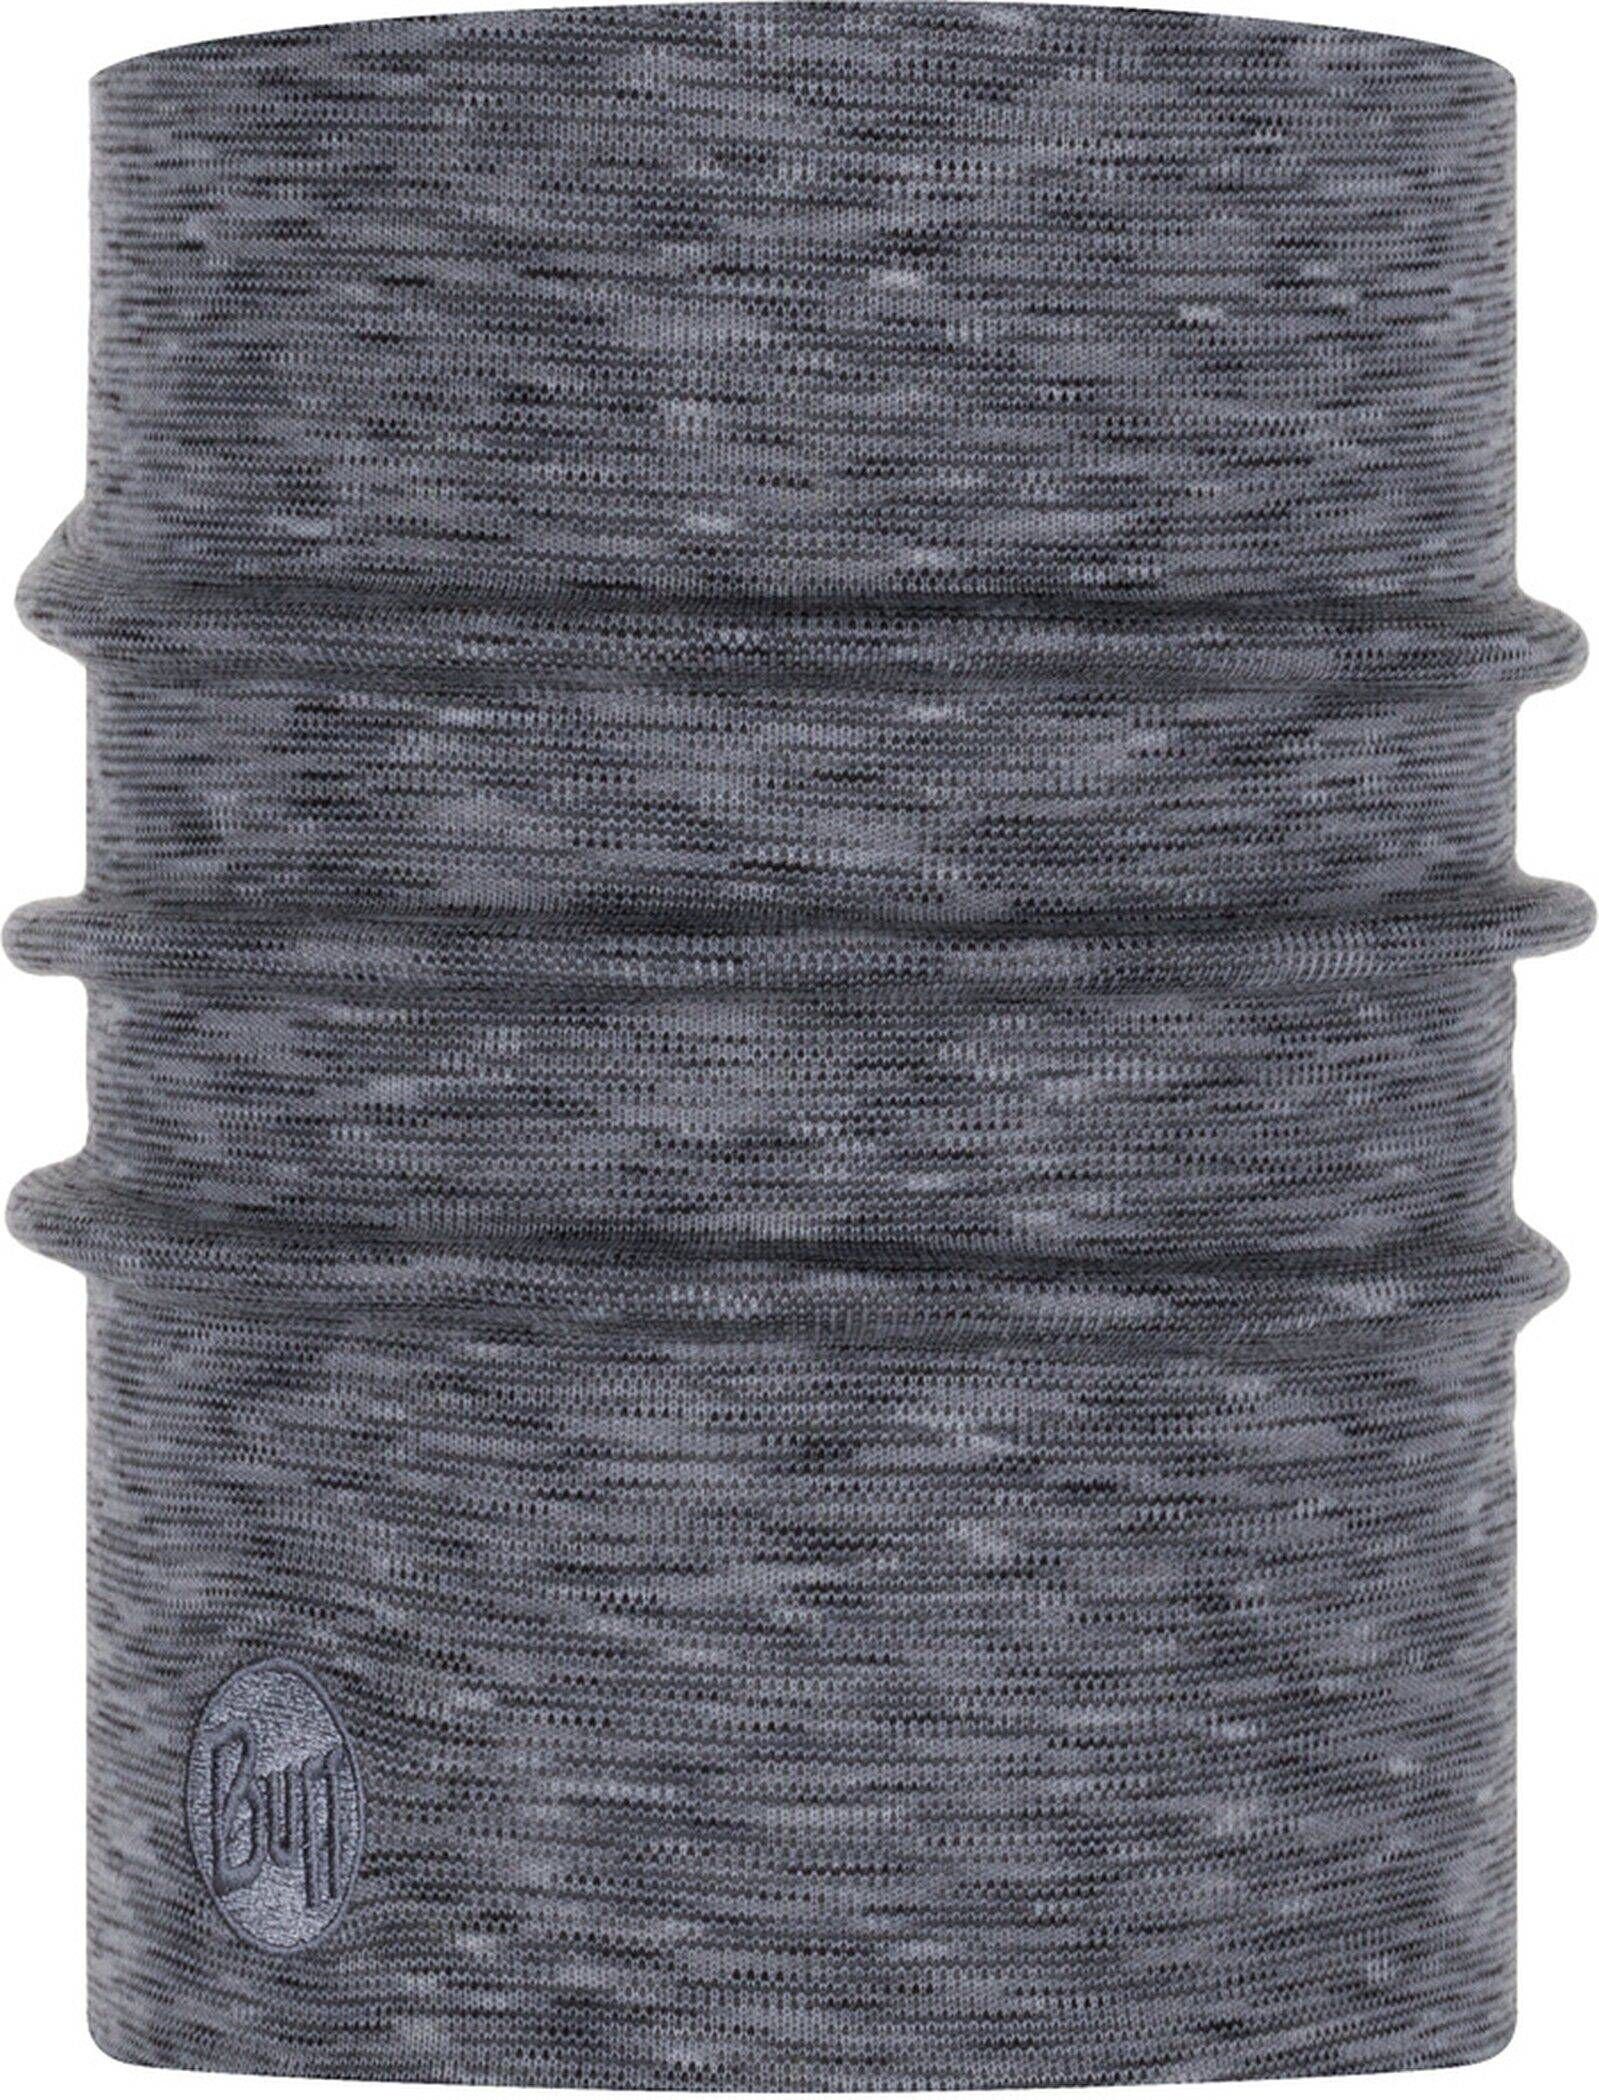 Halswärmer Buff Grau-fog Loop stripes multi grey